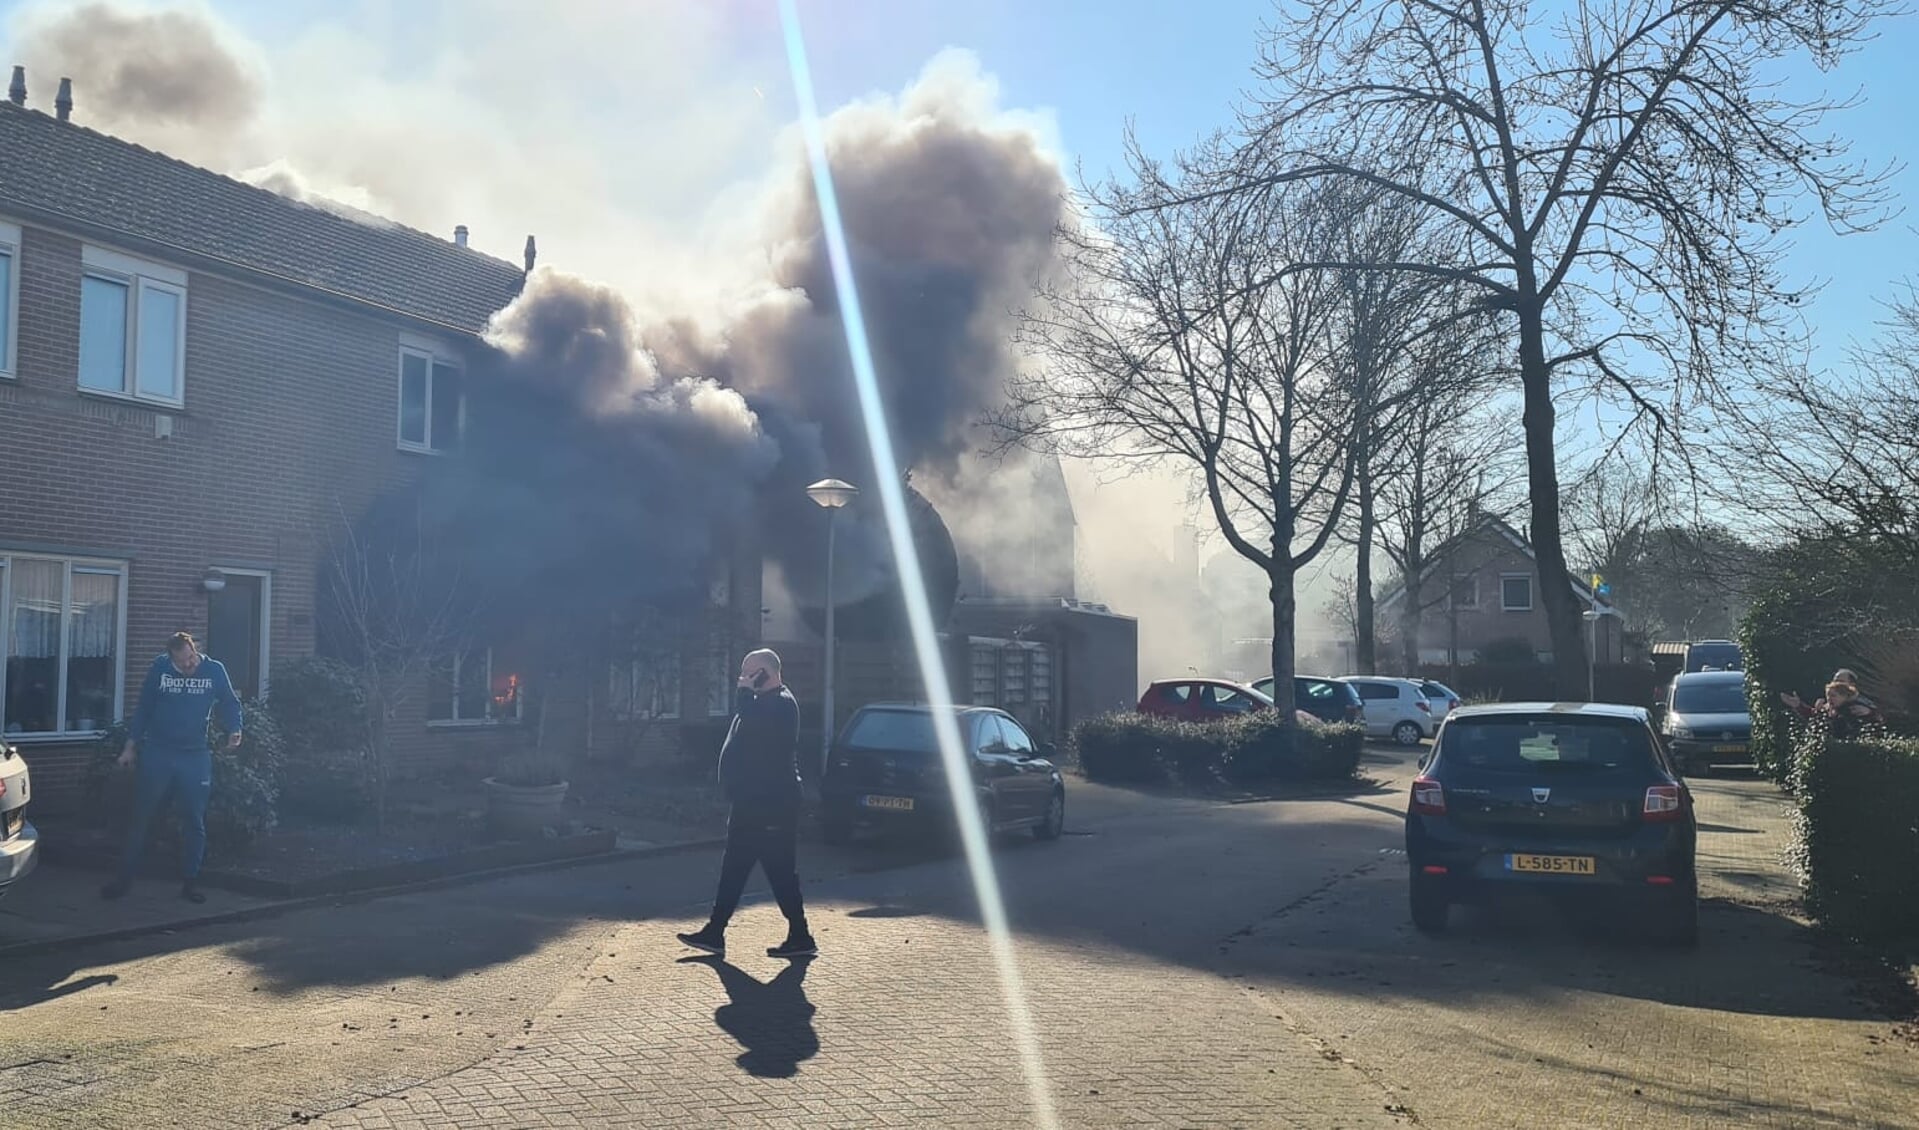 Hevige rookontwikkeling bij de woningbrand aan de Buntven in Huijbergen.